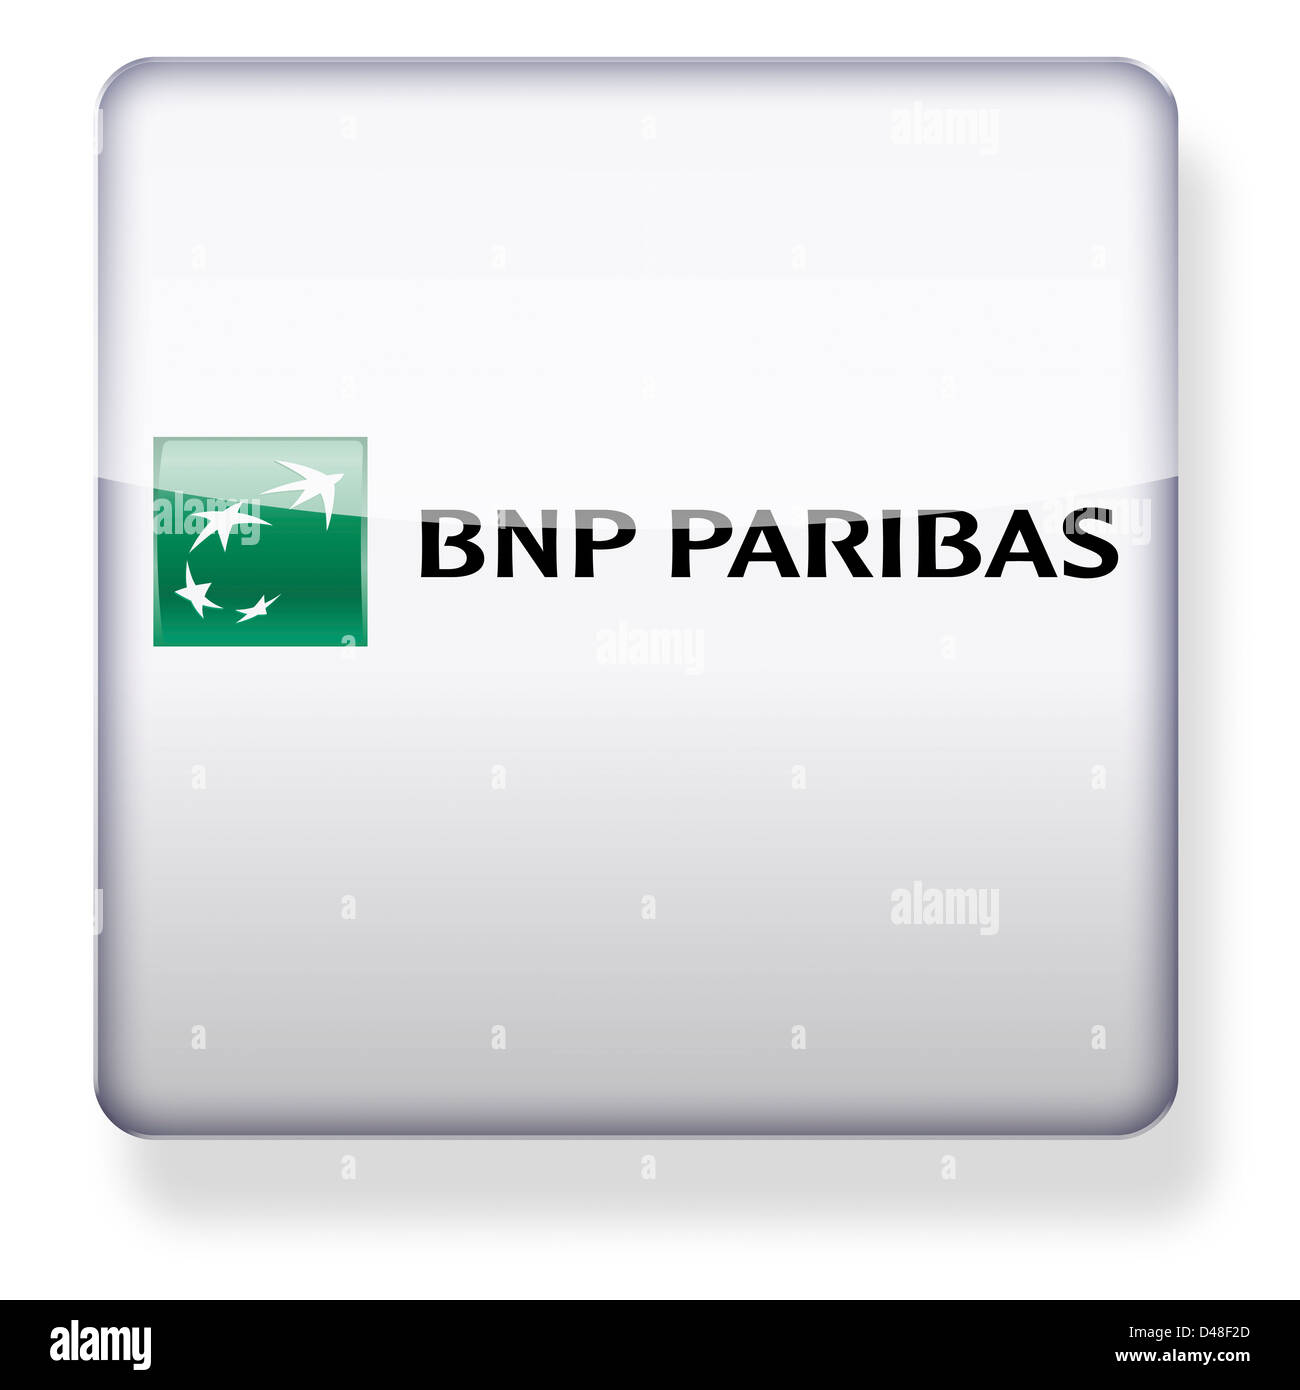 BNP Paribas logotipo como el icono de una aplicación. Trazado de recorte incluido. Foto de stock